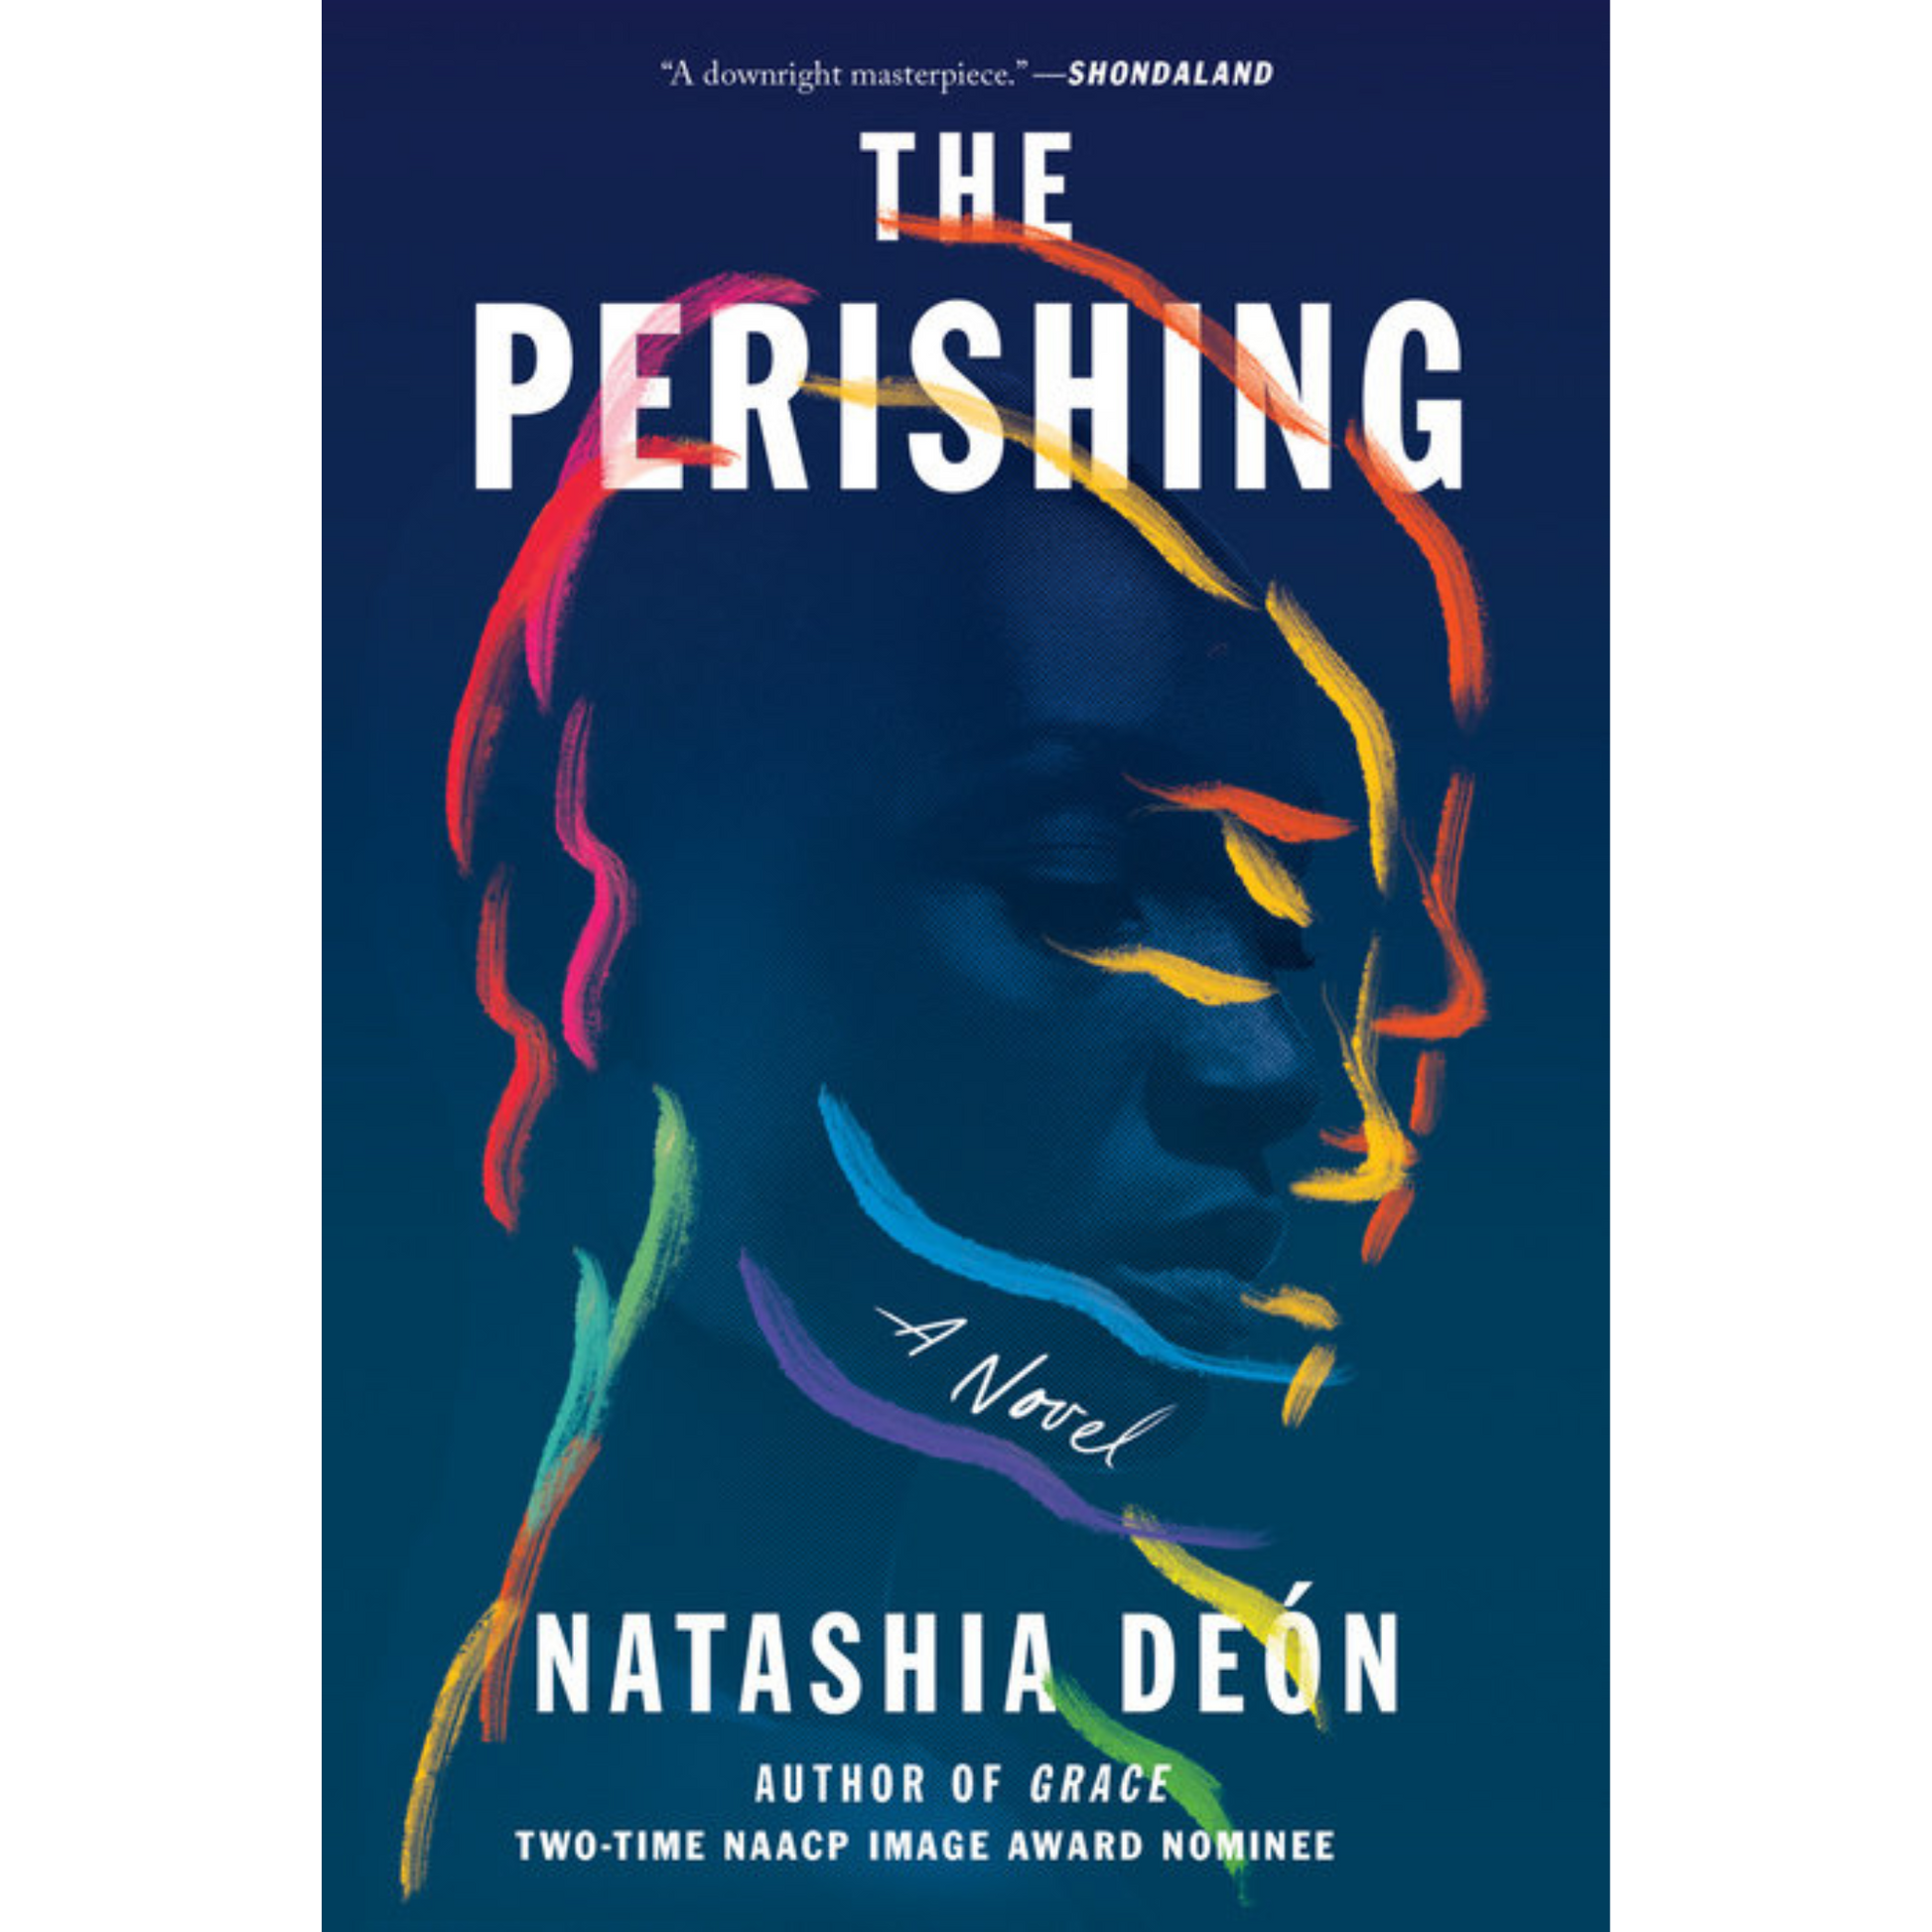 the perishing natashia deon pb